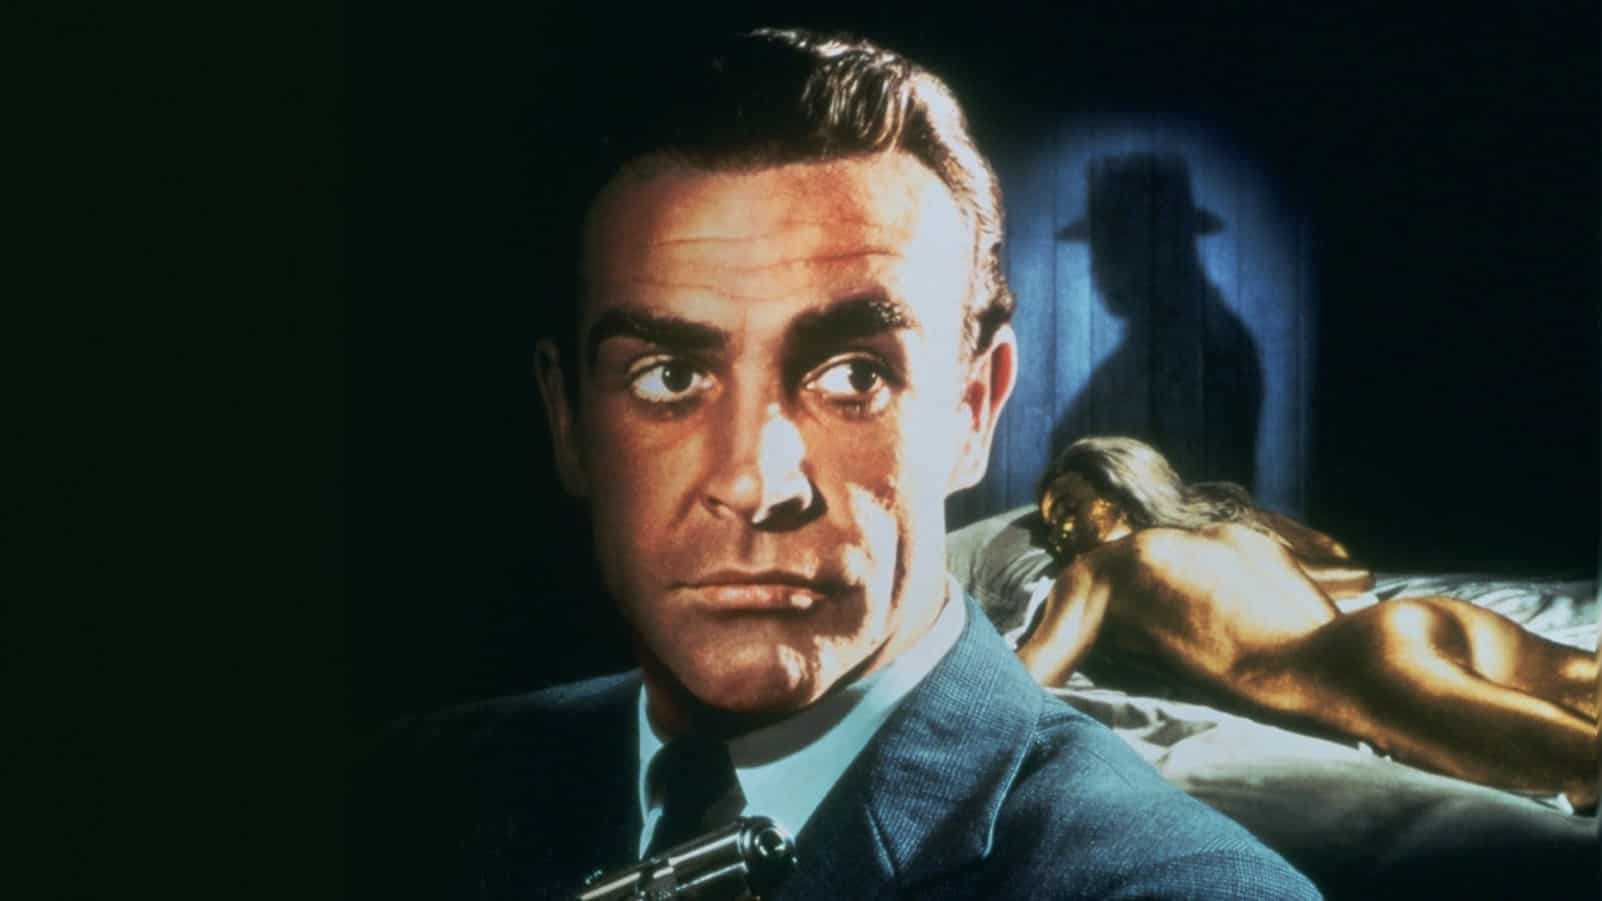 Джеймс бонд: все фильмы по порядку, сколько снято частей про агента 007, хронология серий по списку с дэниелом крейгом, шоном коннери и пирсом броснаном